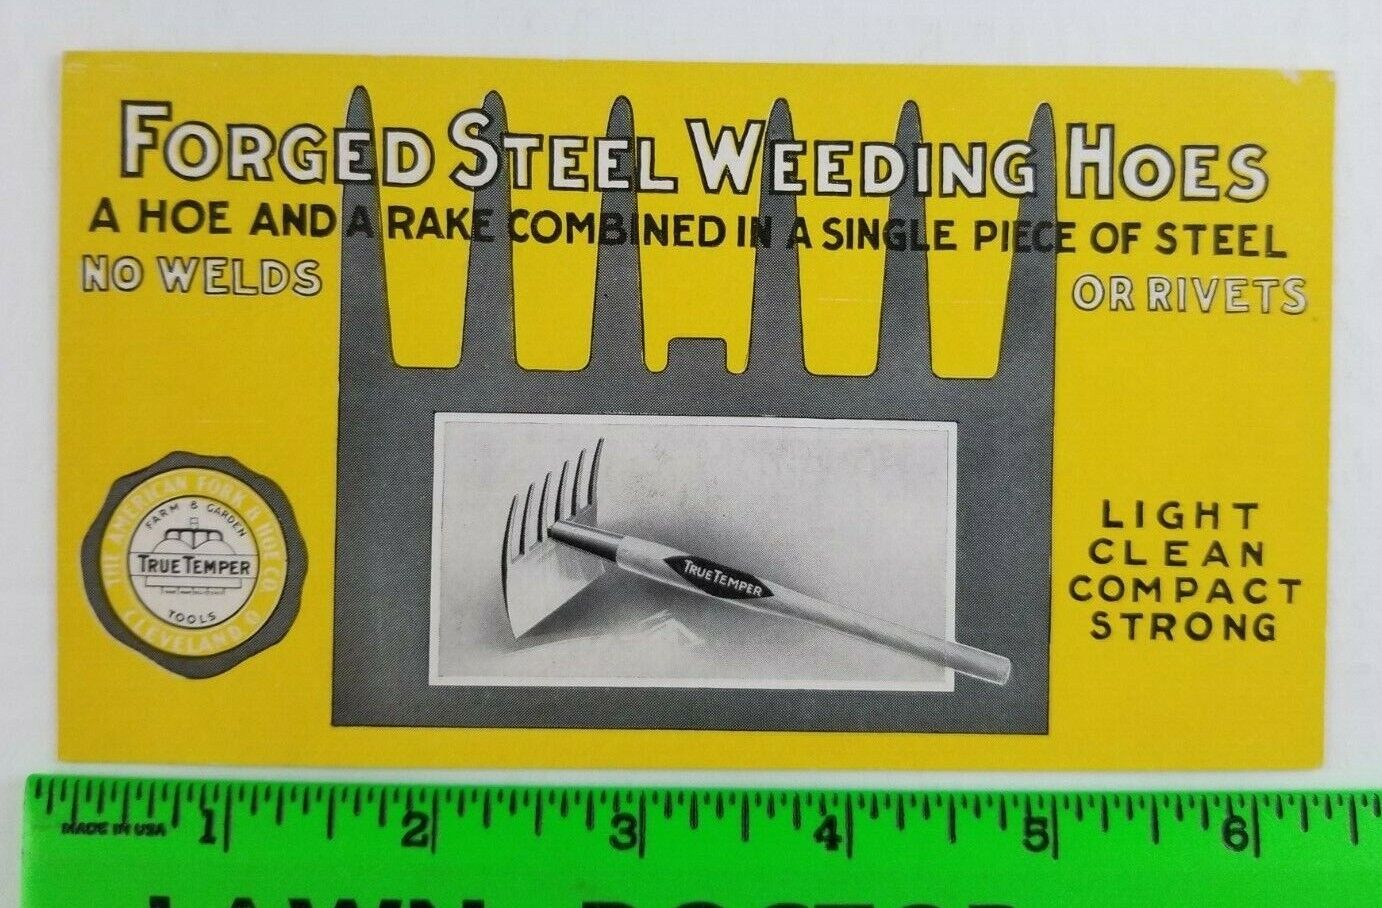 Vintage True Temper Steel Weeding Hoes Gardening Tool Advertisement Card